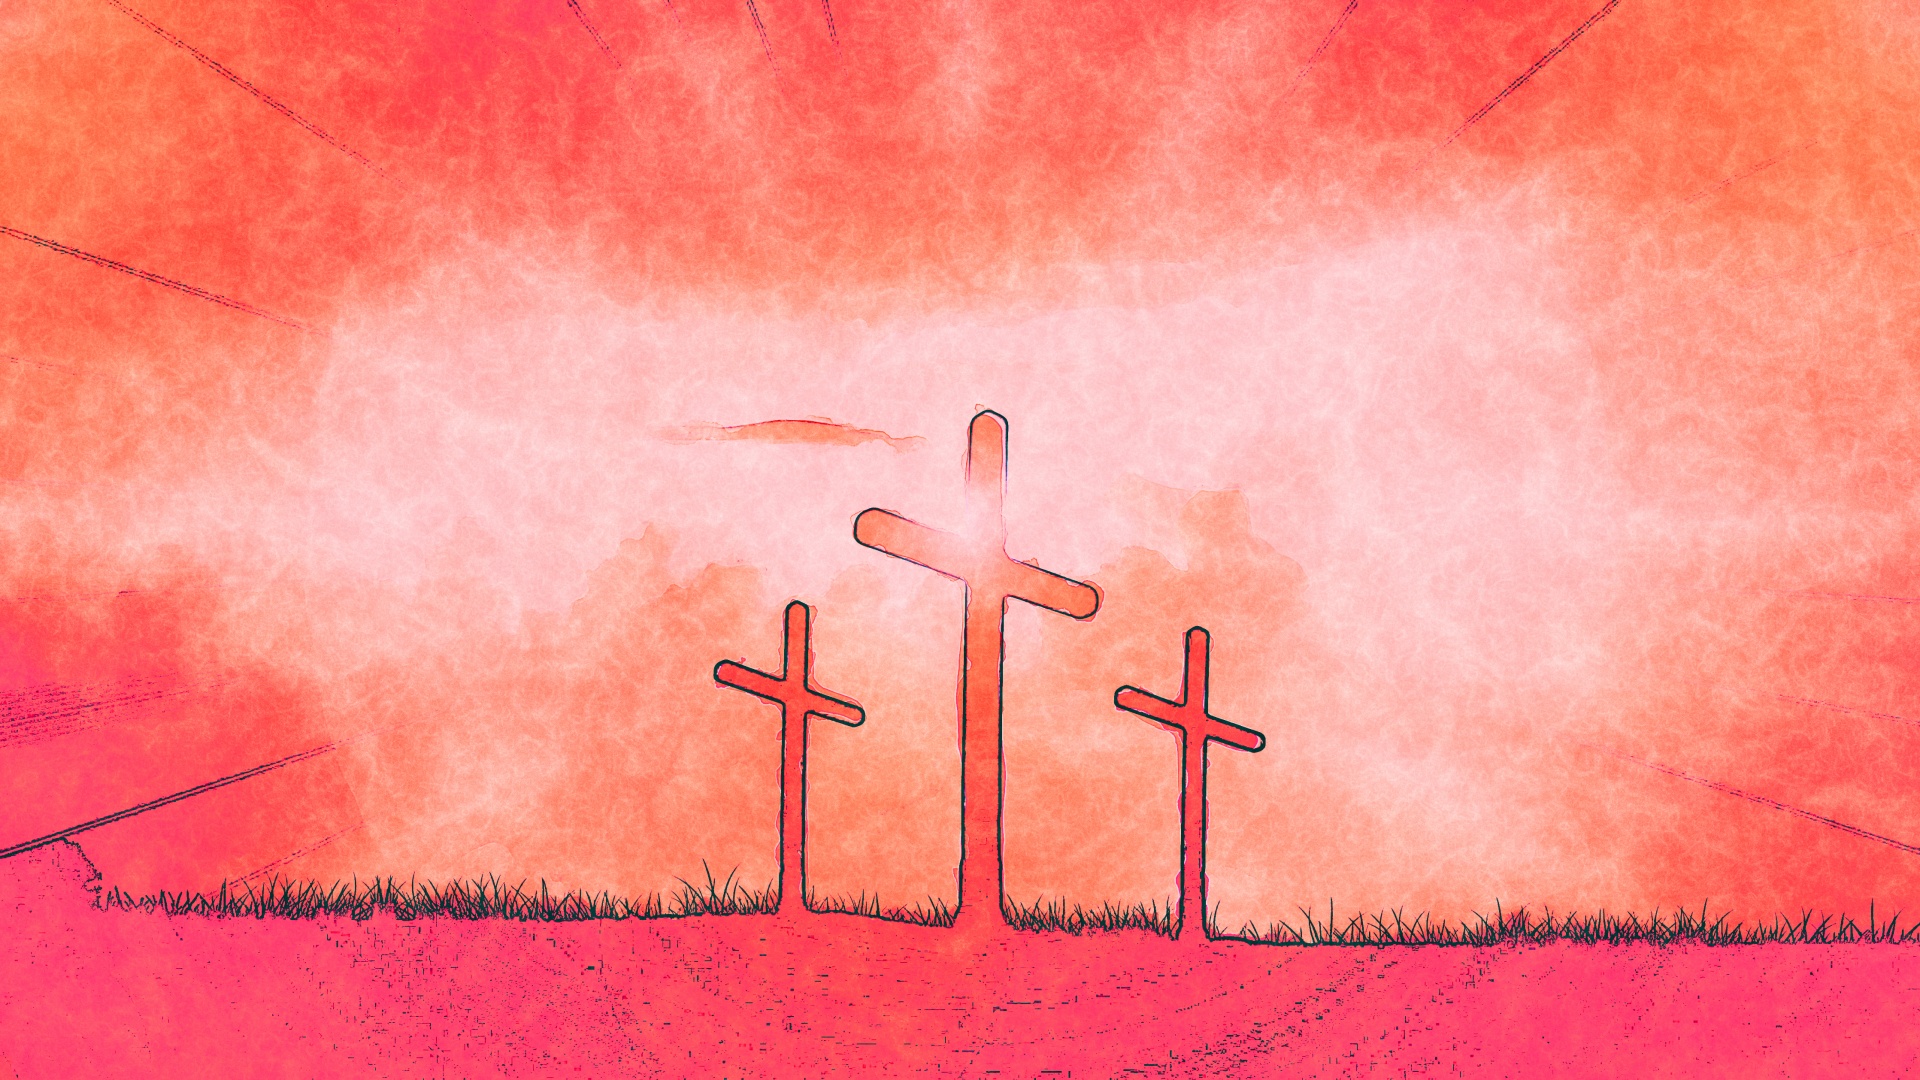 Crucifixion Crosses